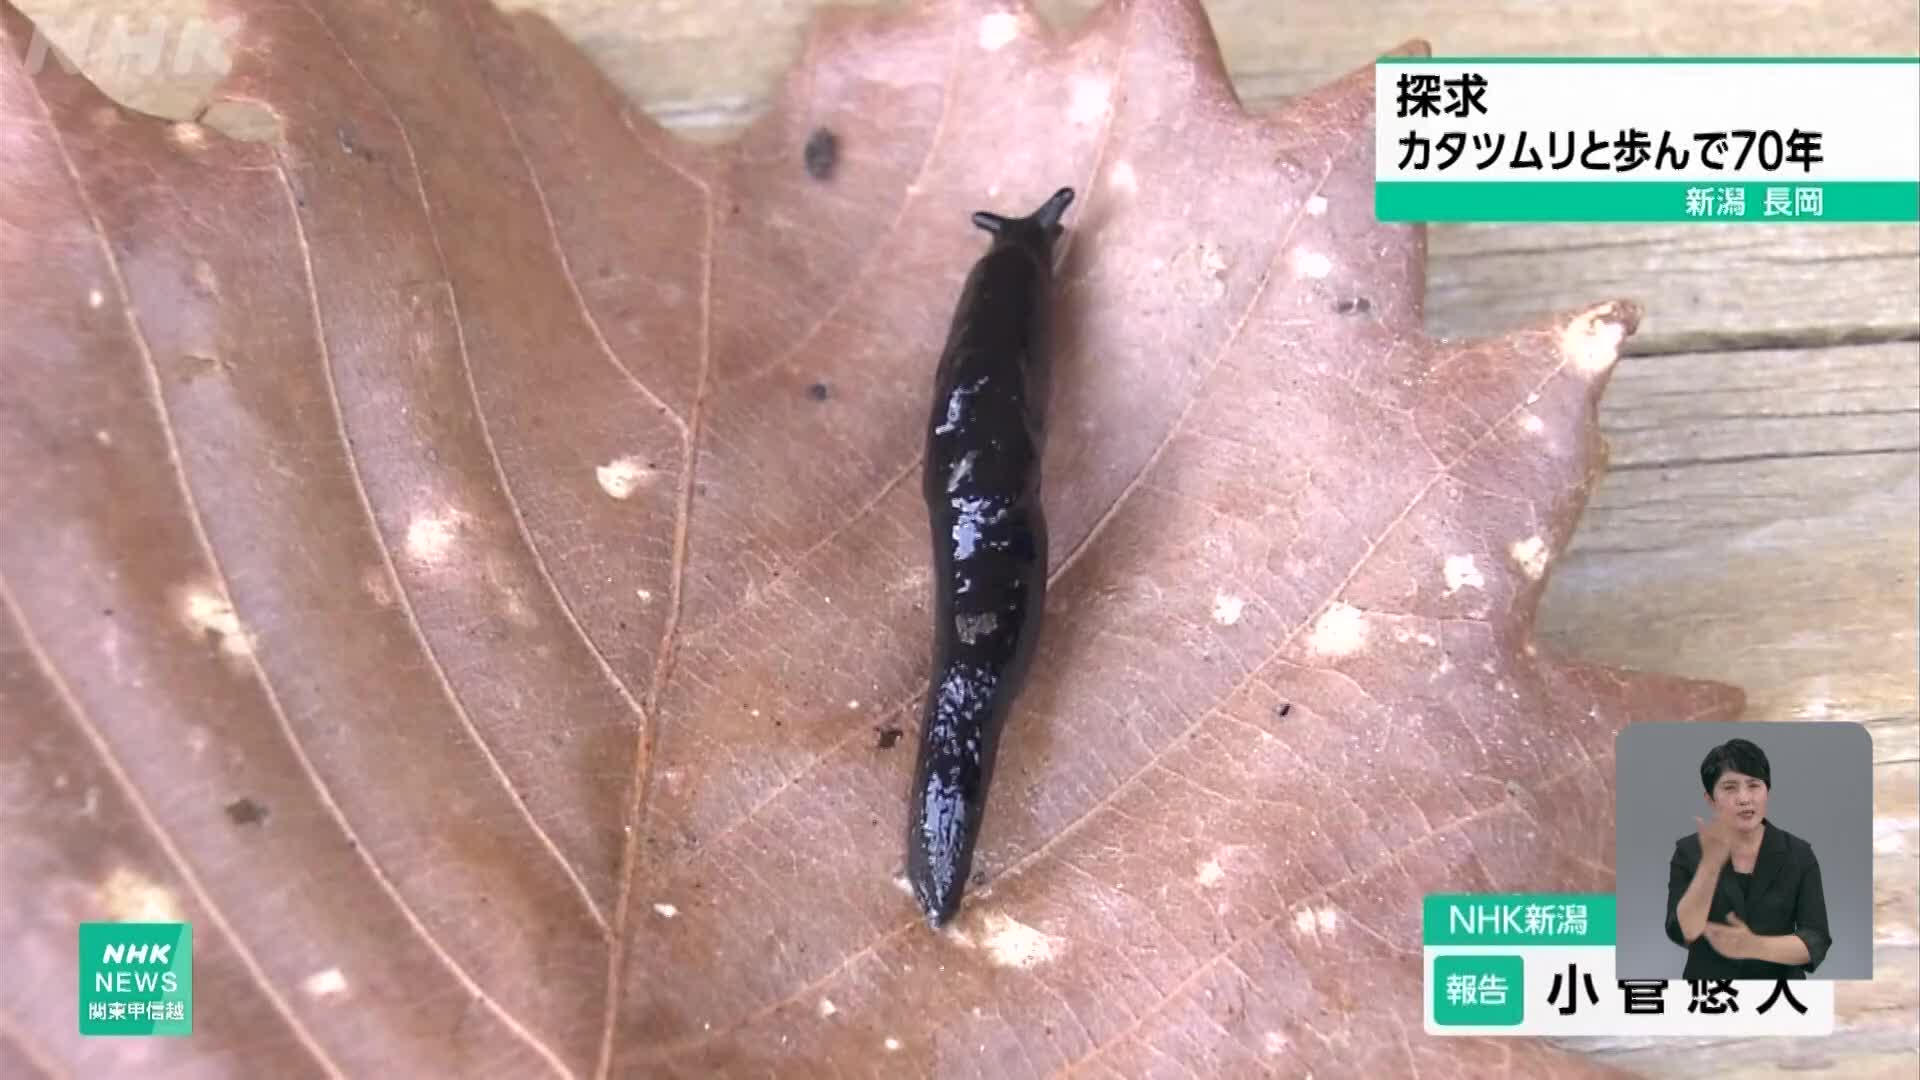 일본, 달팽이와 함께 걸어온 70년 